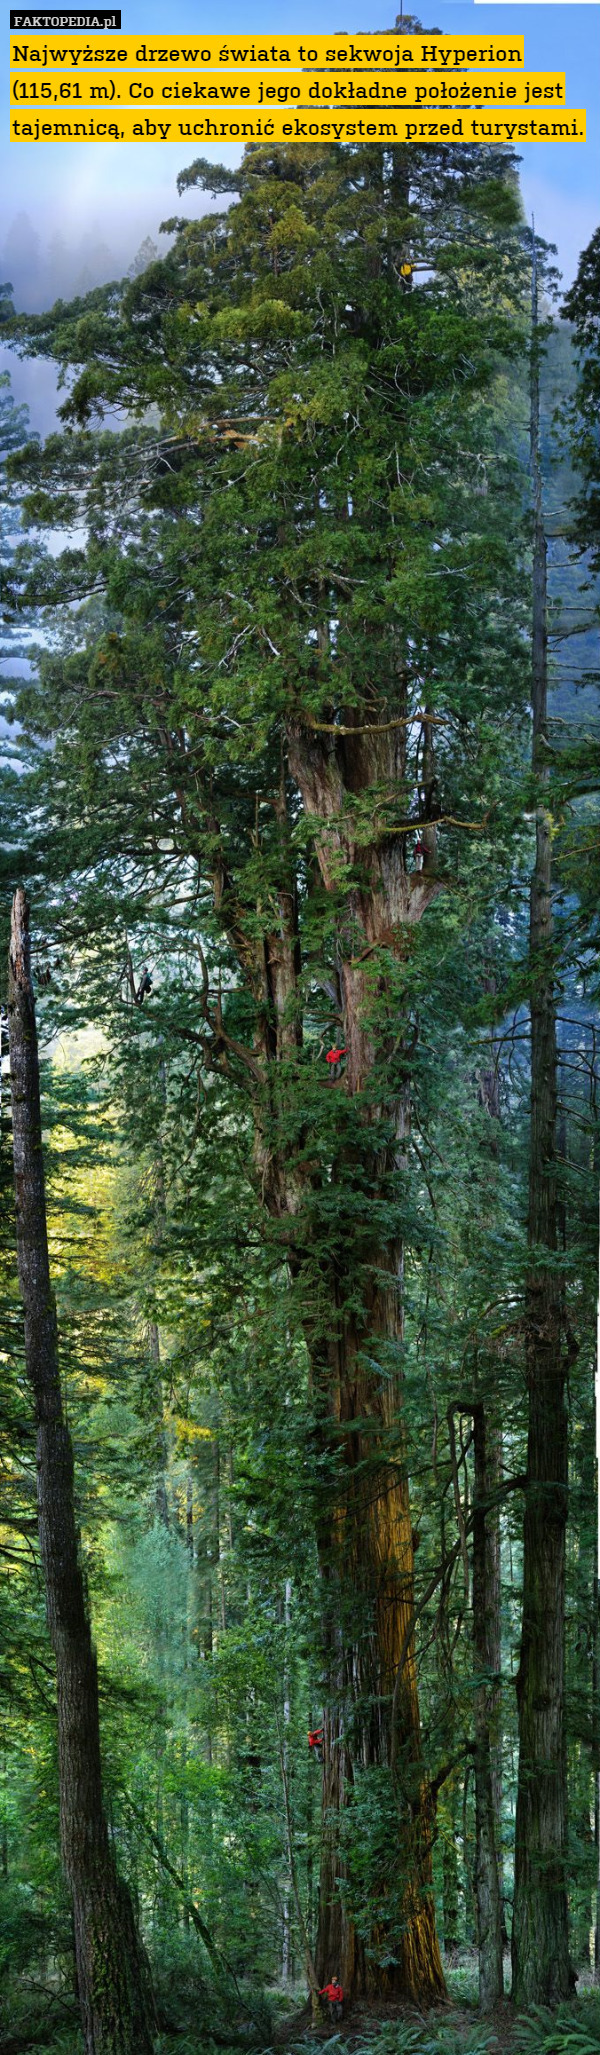 Najwyższe drzewo świata to sekwoja Hyperion (115,61 m). Co ciekawe jego dokładne położenie jest tajemnicą, aby uchronić ekosystem przed turystami. 